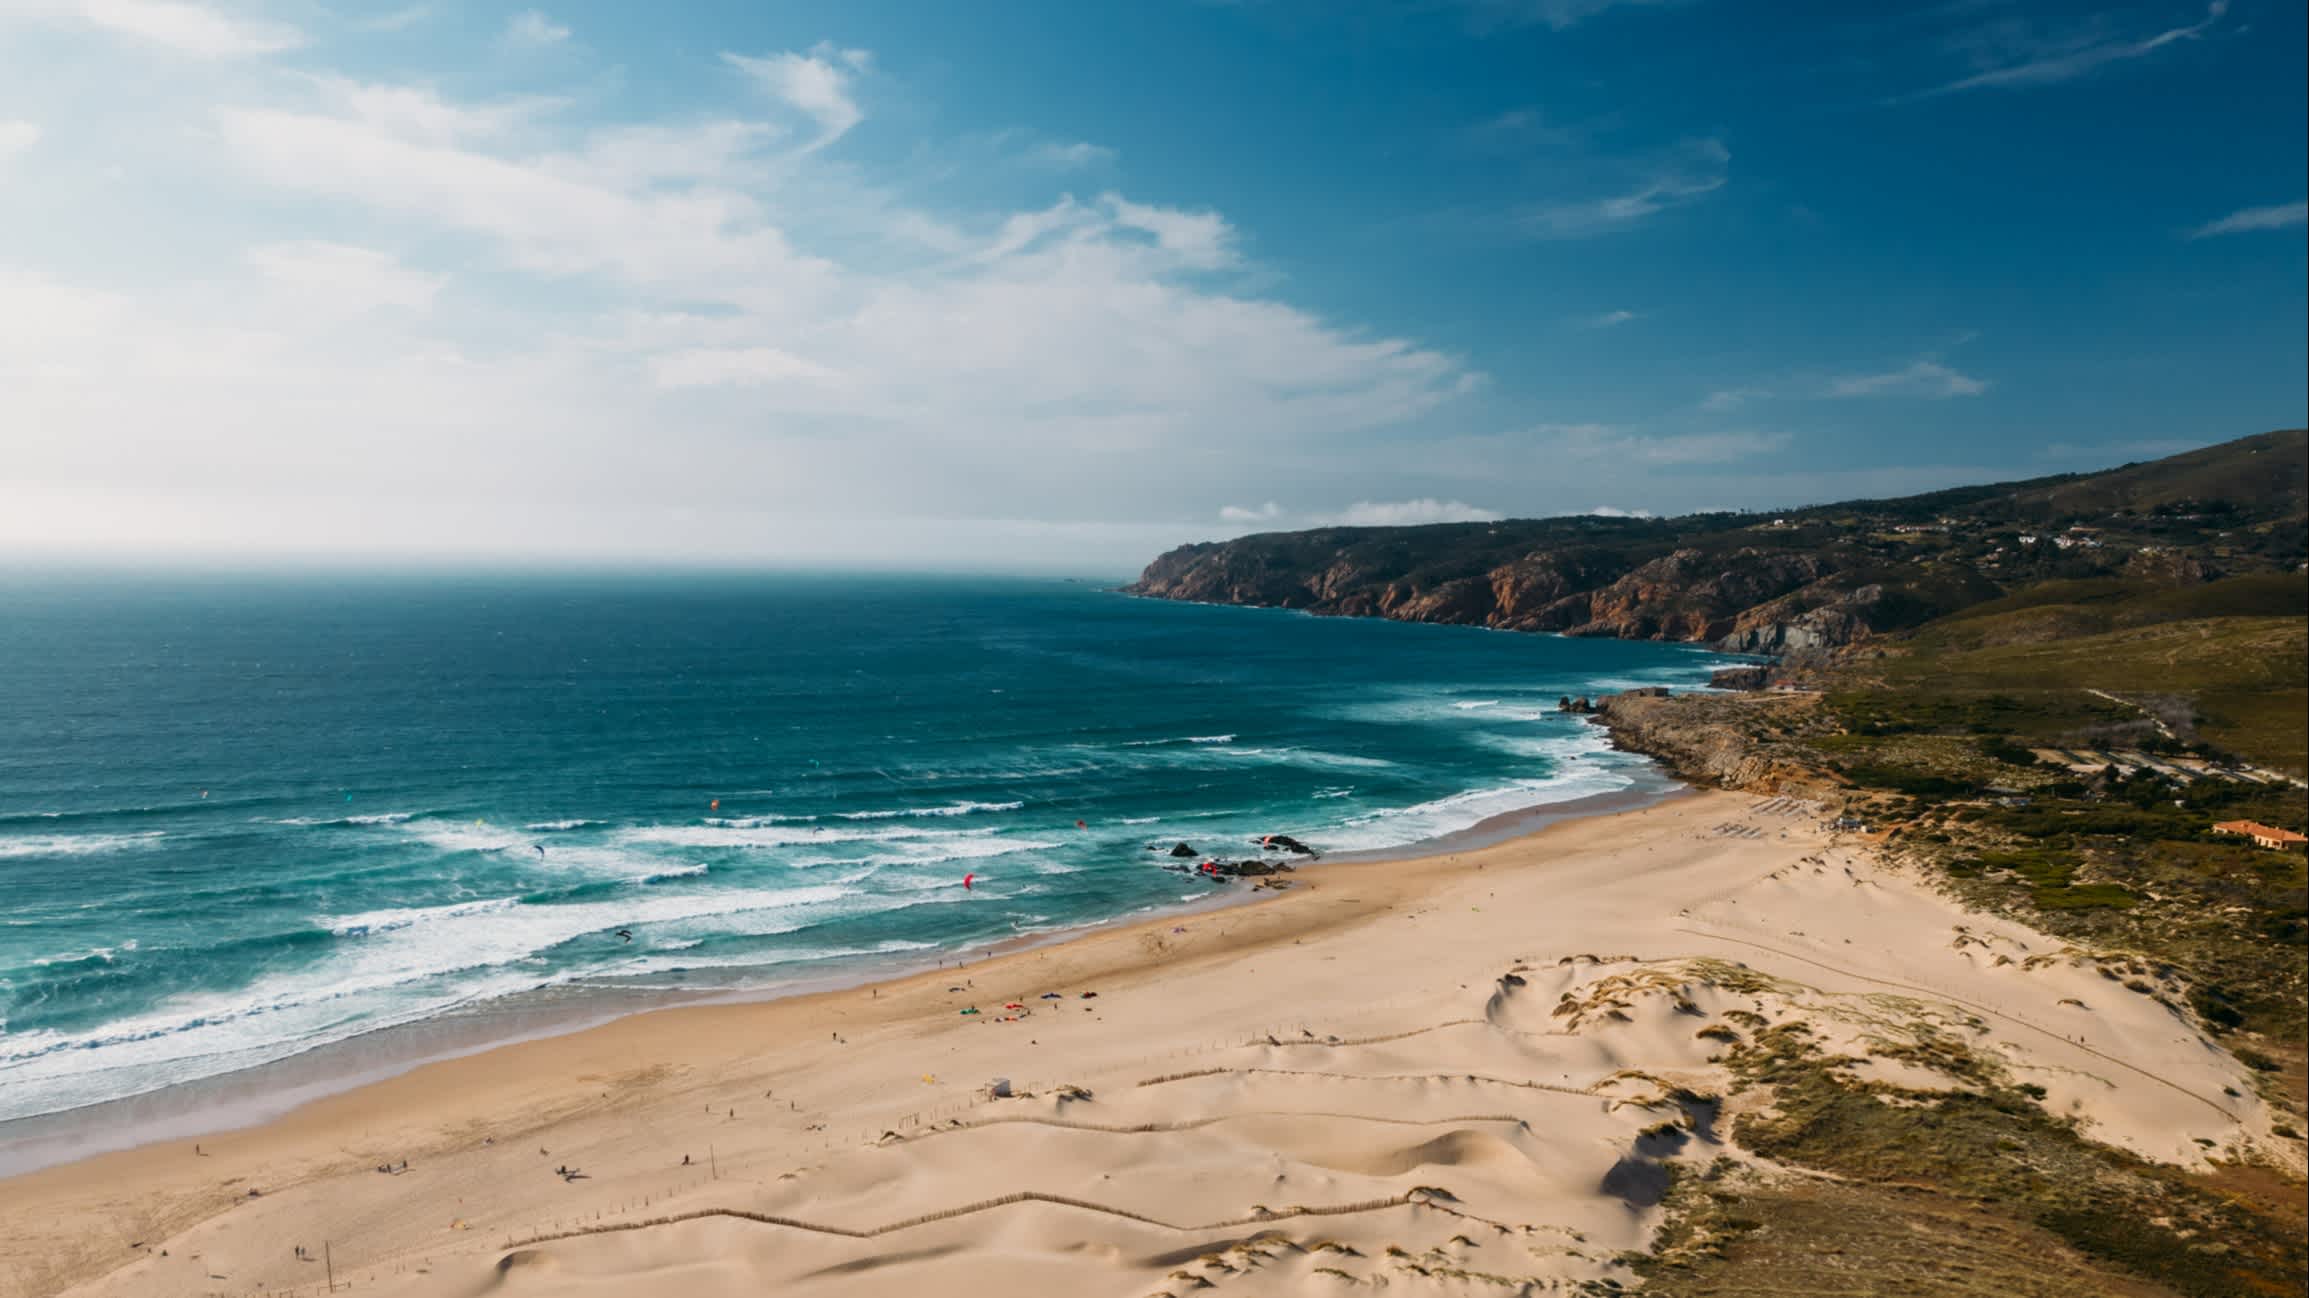 Vue du sable claire entourée de falaises sur la plage de Guincho au Portugal